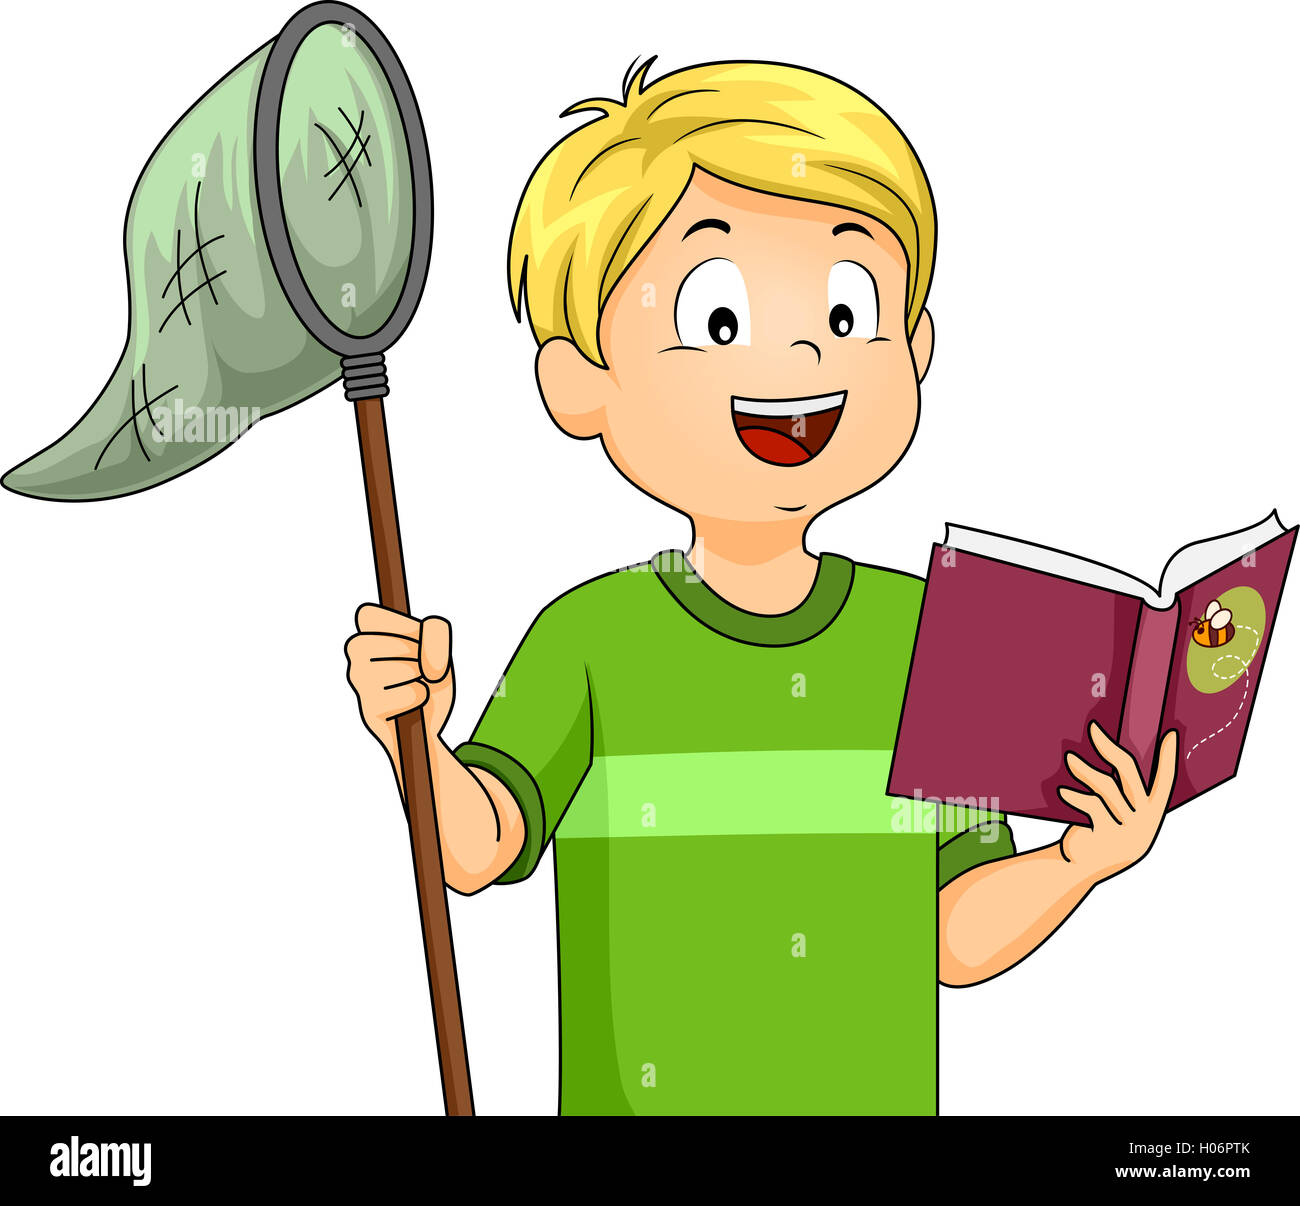 Illustrazione di un ragazzo tenendo un Butterfly Net durante la lettura di un libro Foto Stock